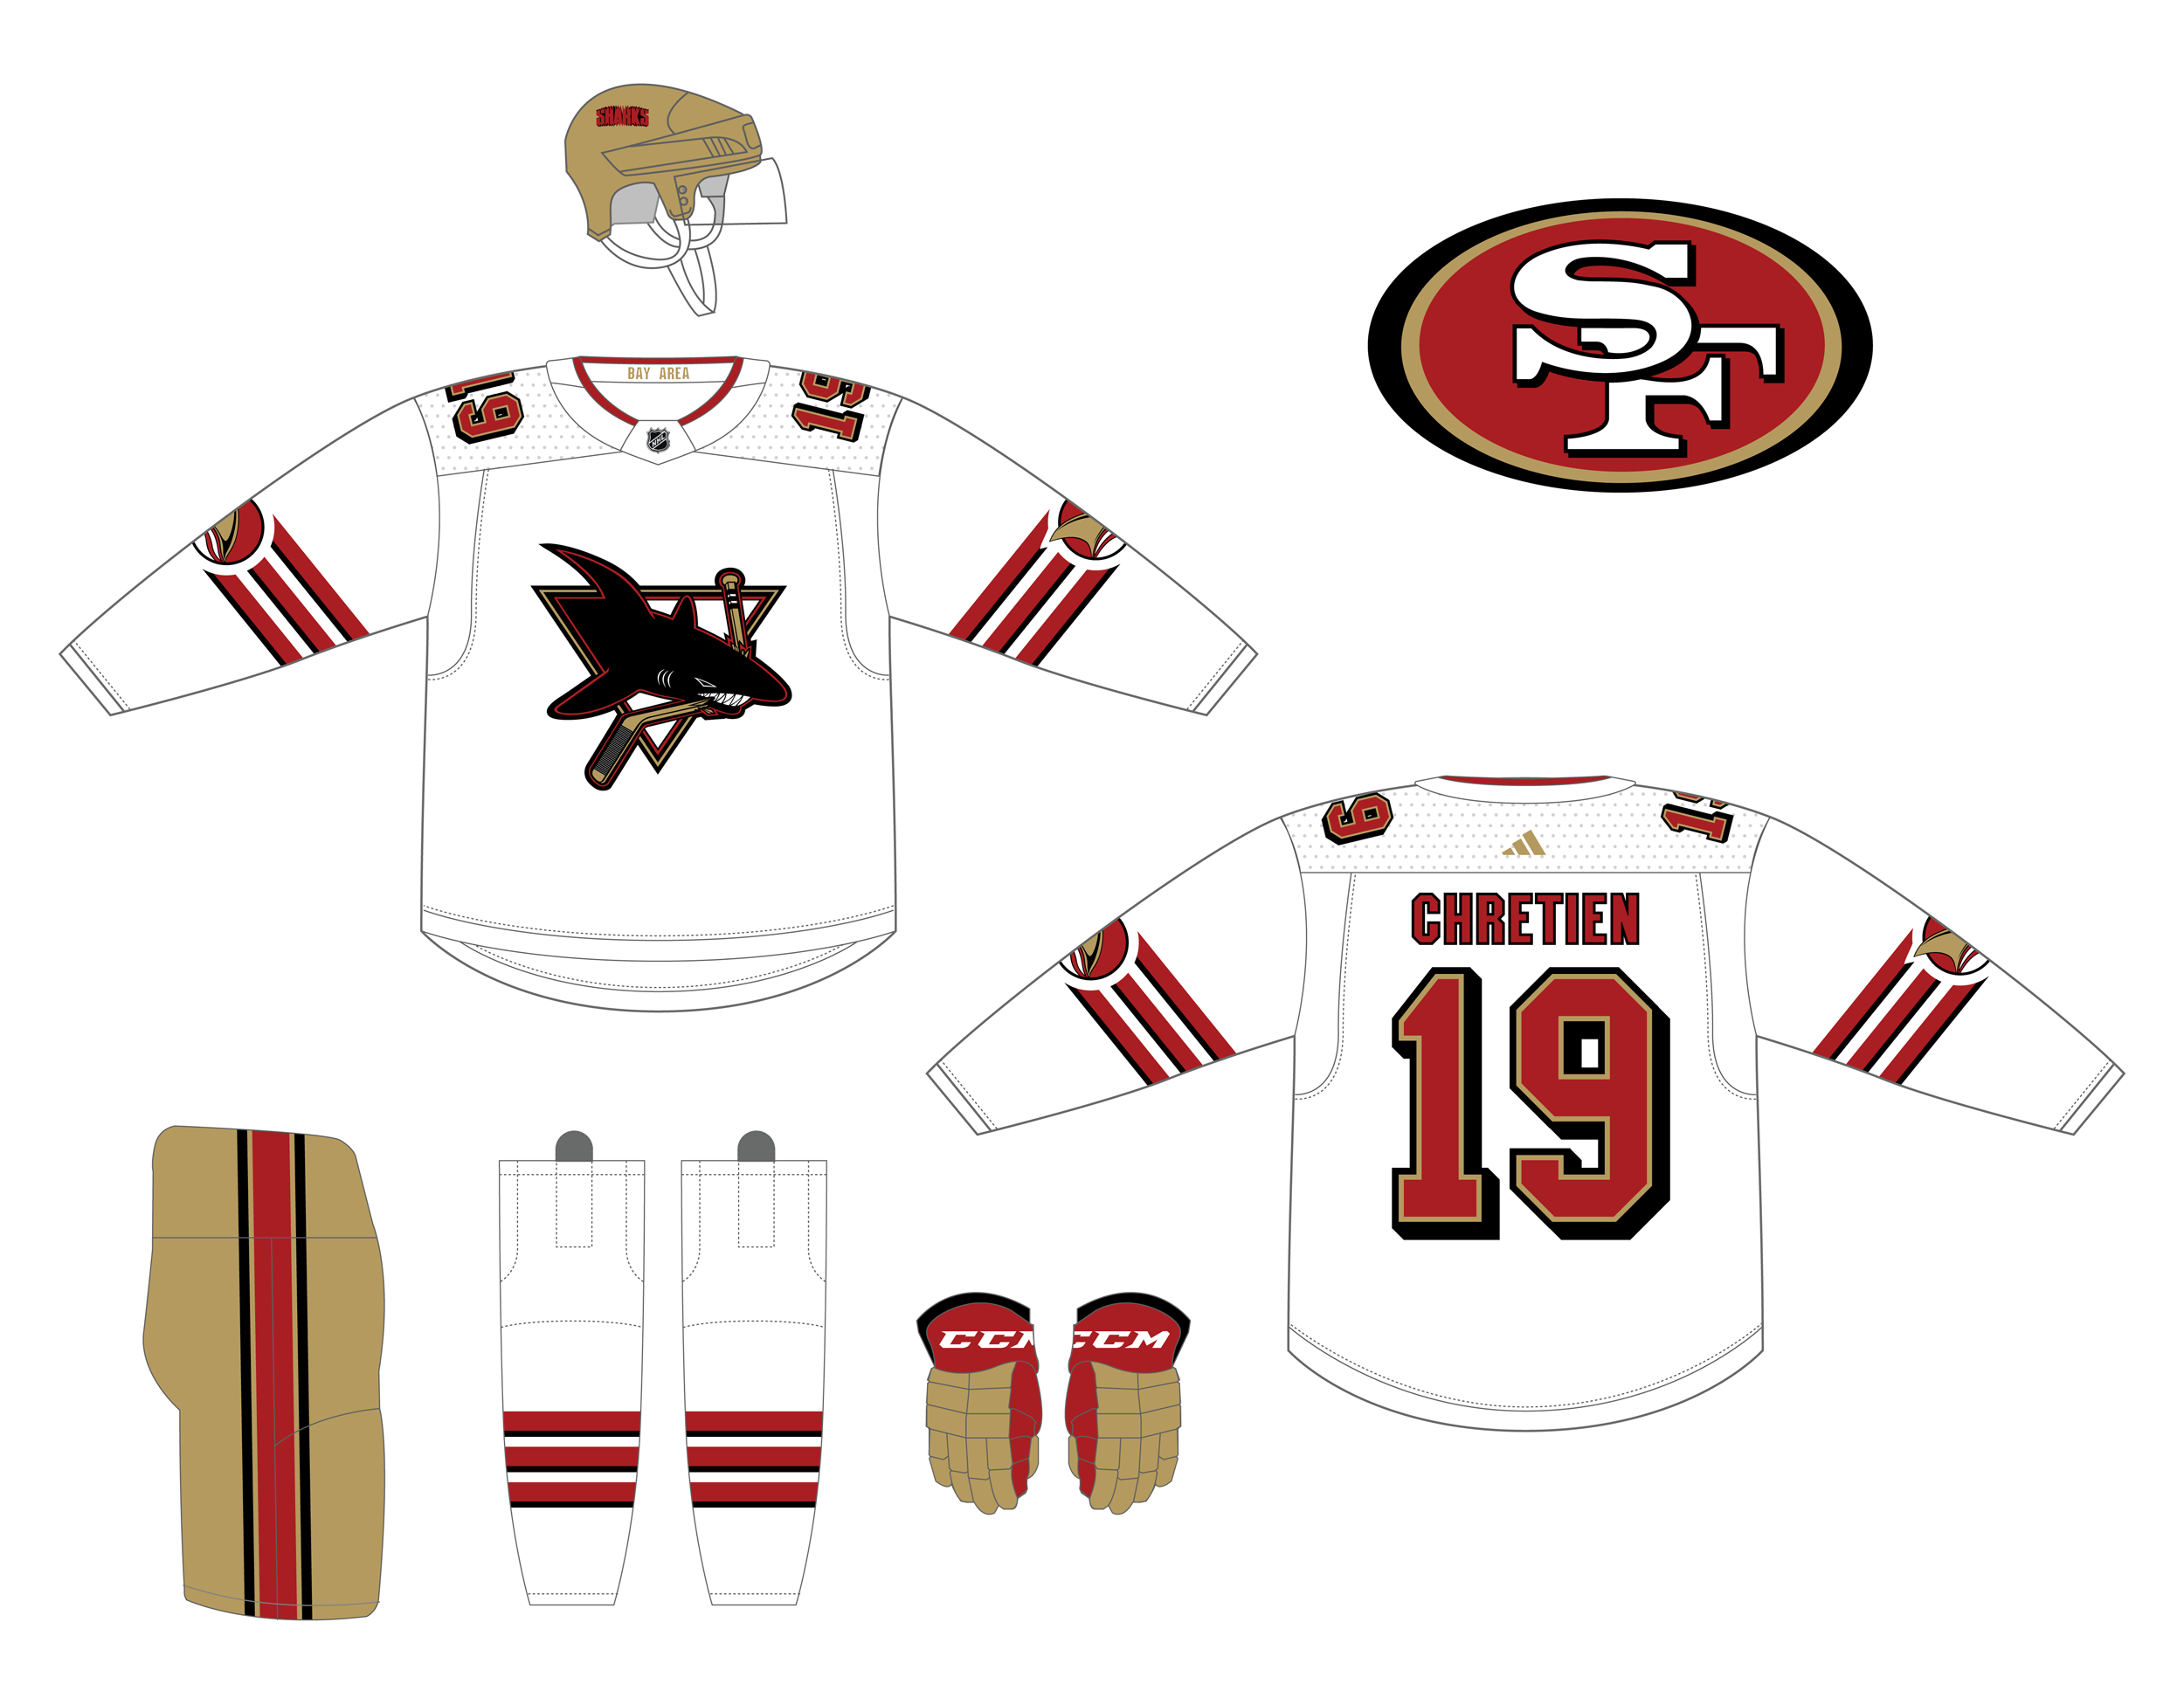 FS: Sharks/49ers mashup jersey : r/hockeyjerseys